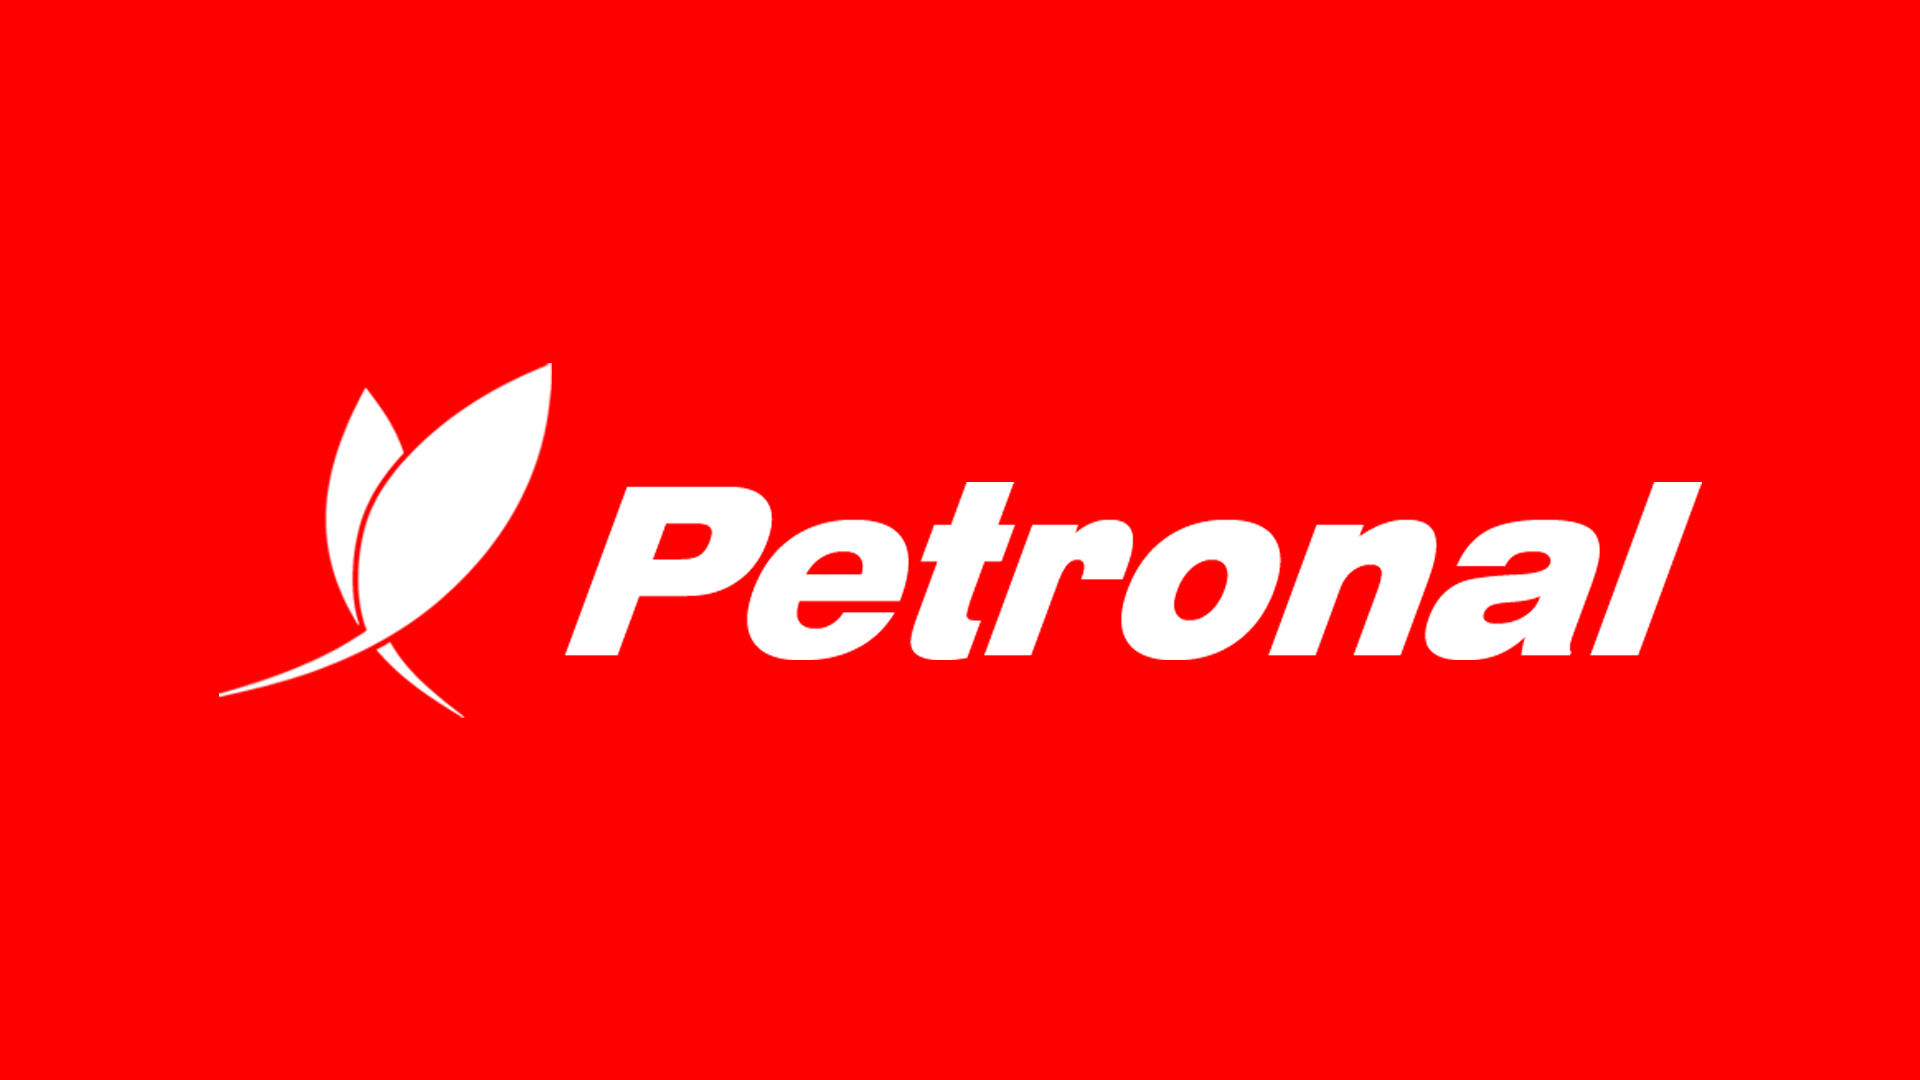 Petronal